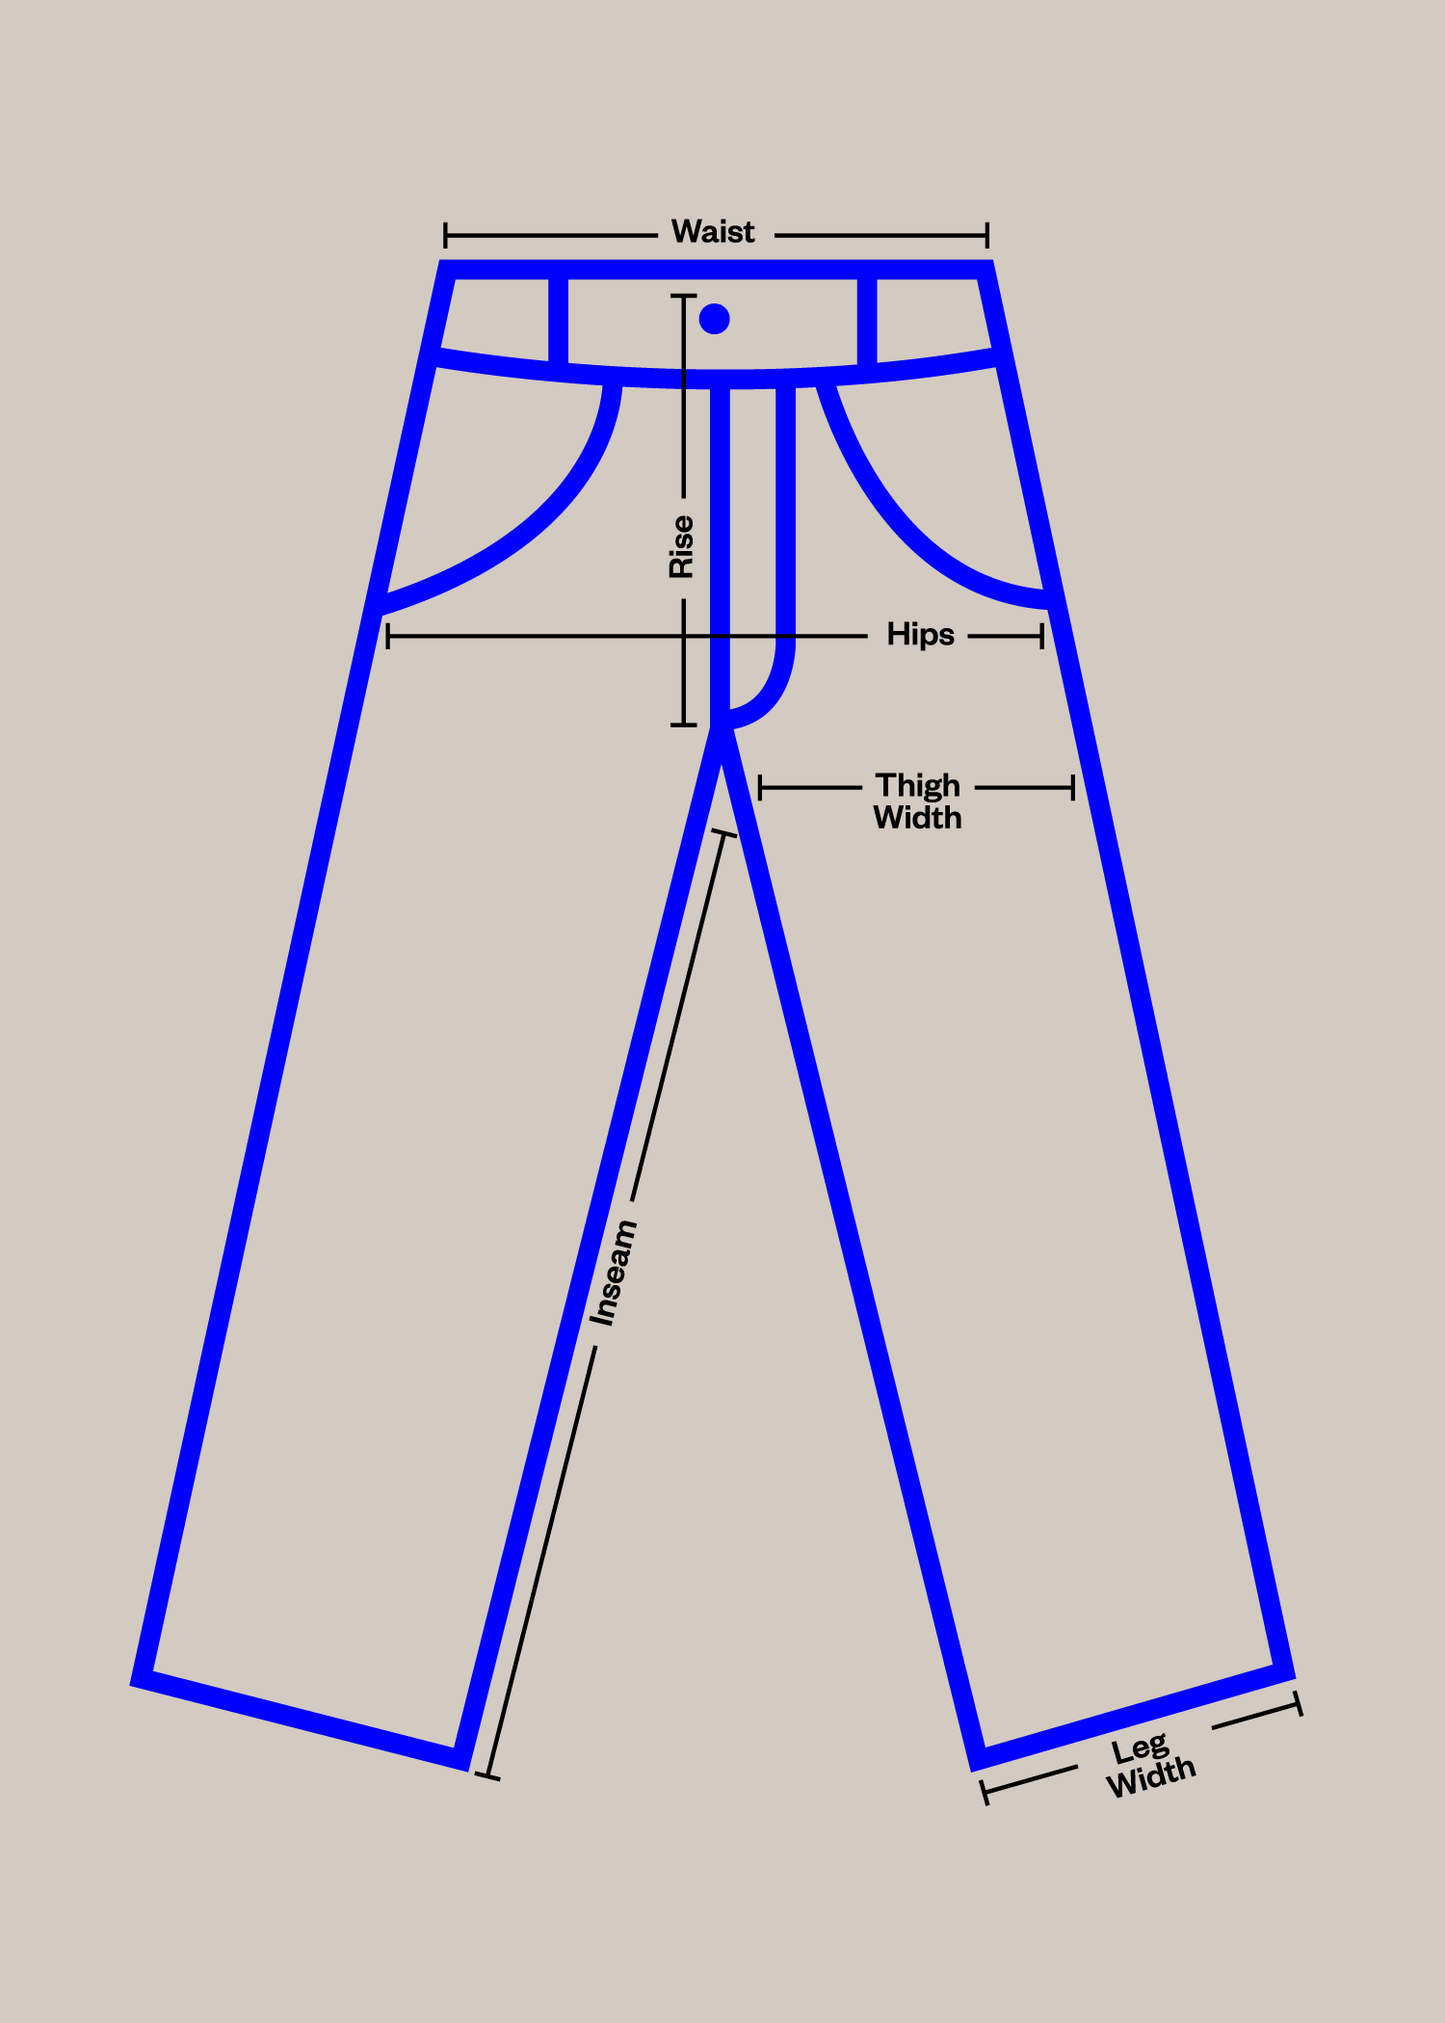 1980s European Workwear Chore Pants Size Women's 29 Men's 32